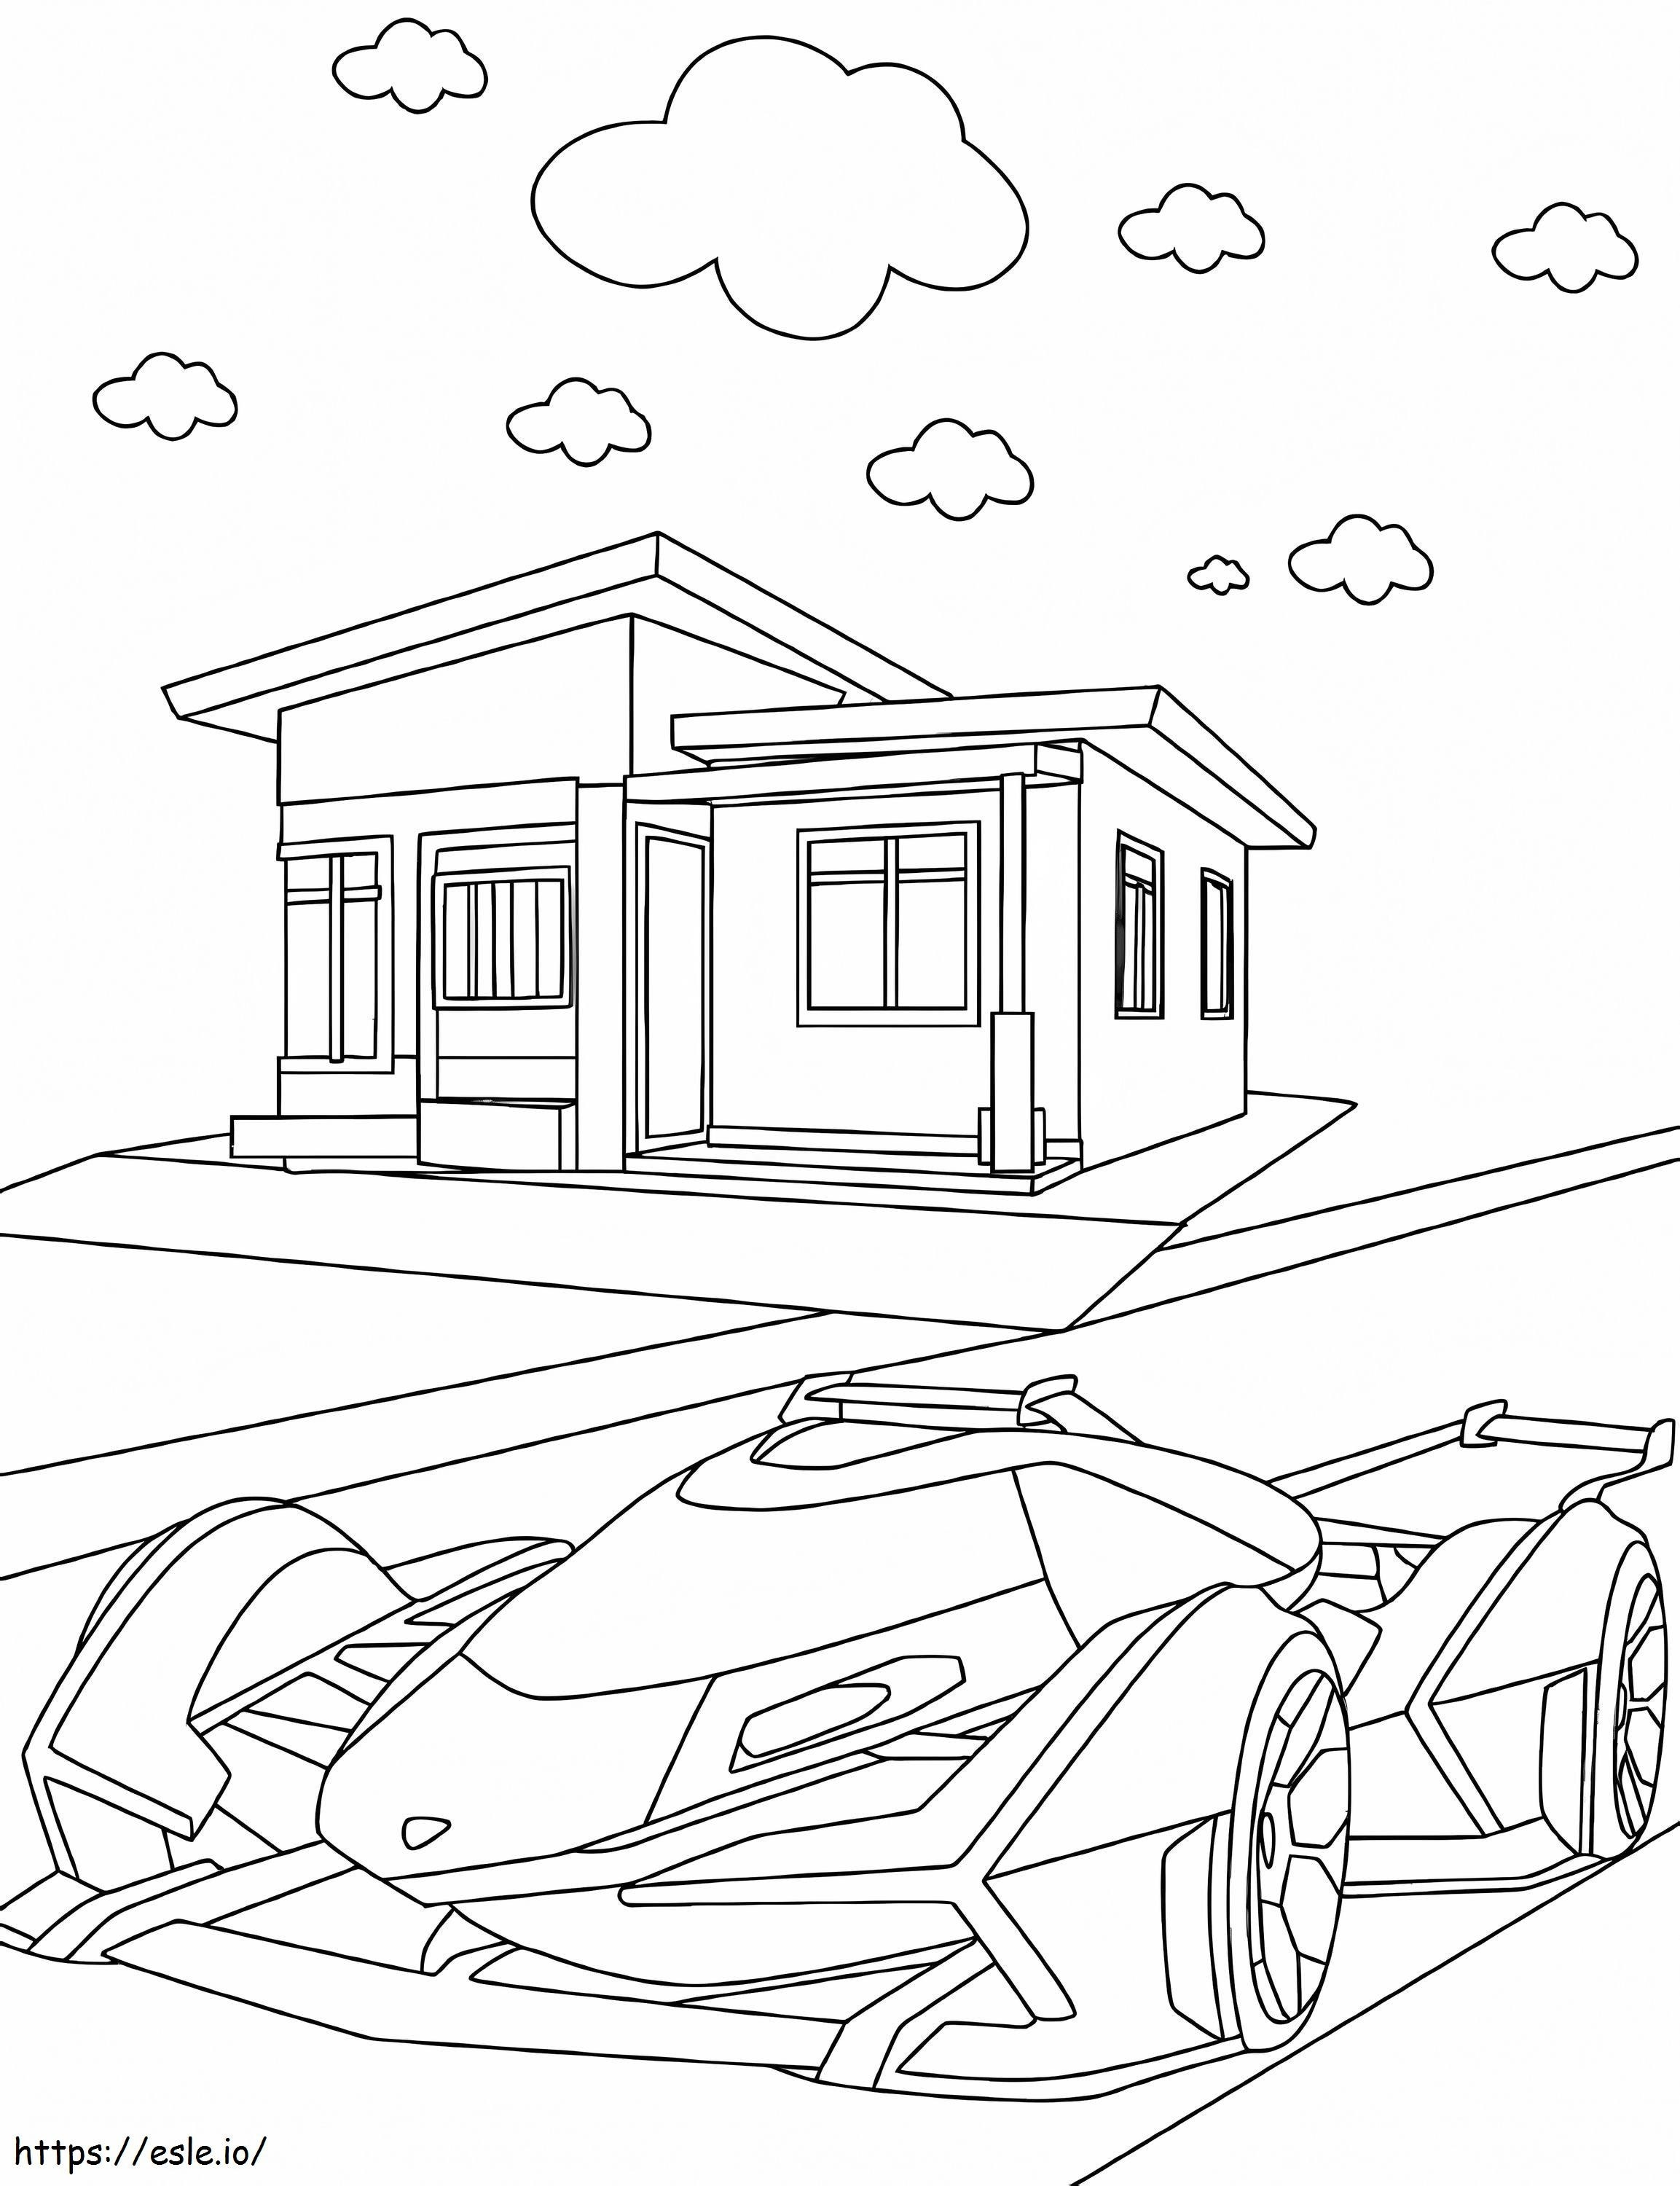 Coloriage Lamborghini et la maison à imprimer dessin